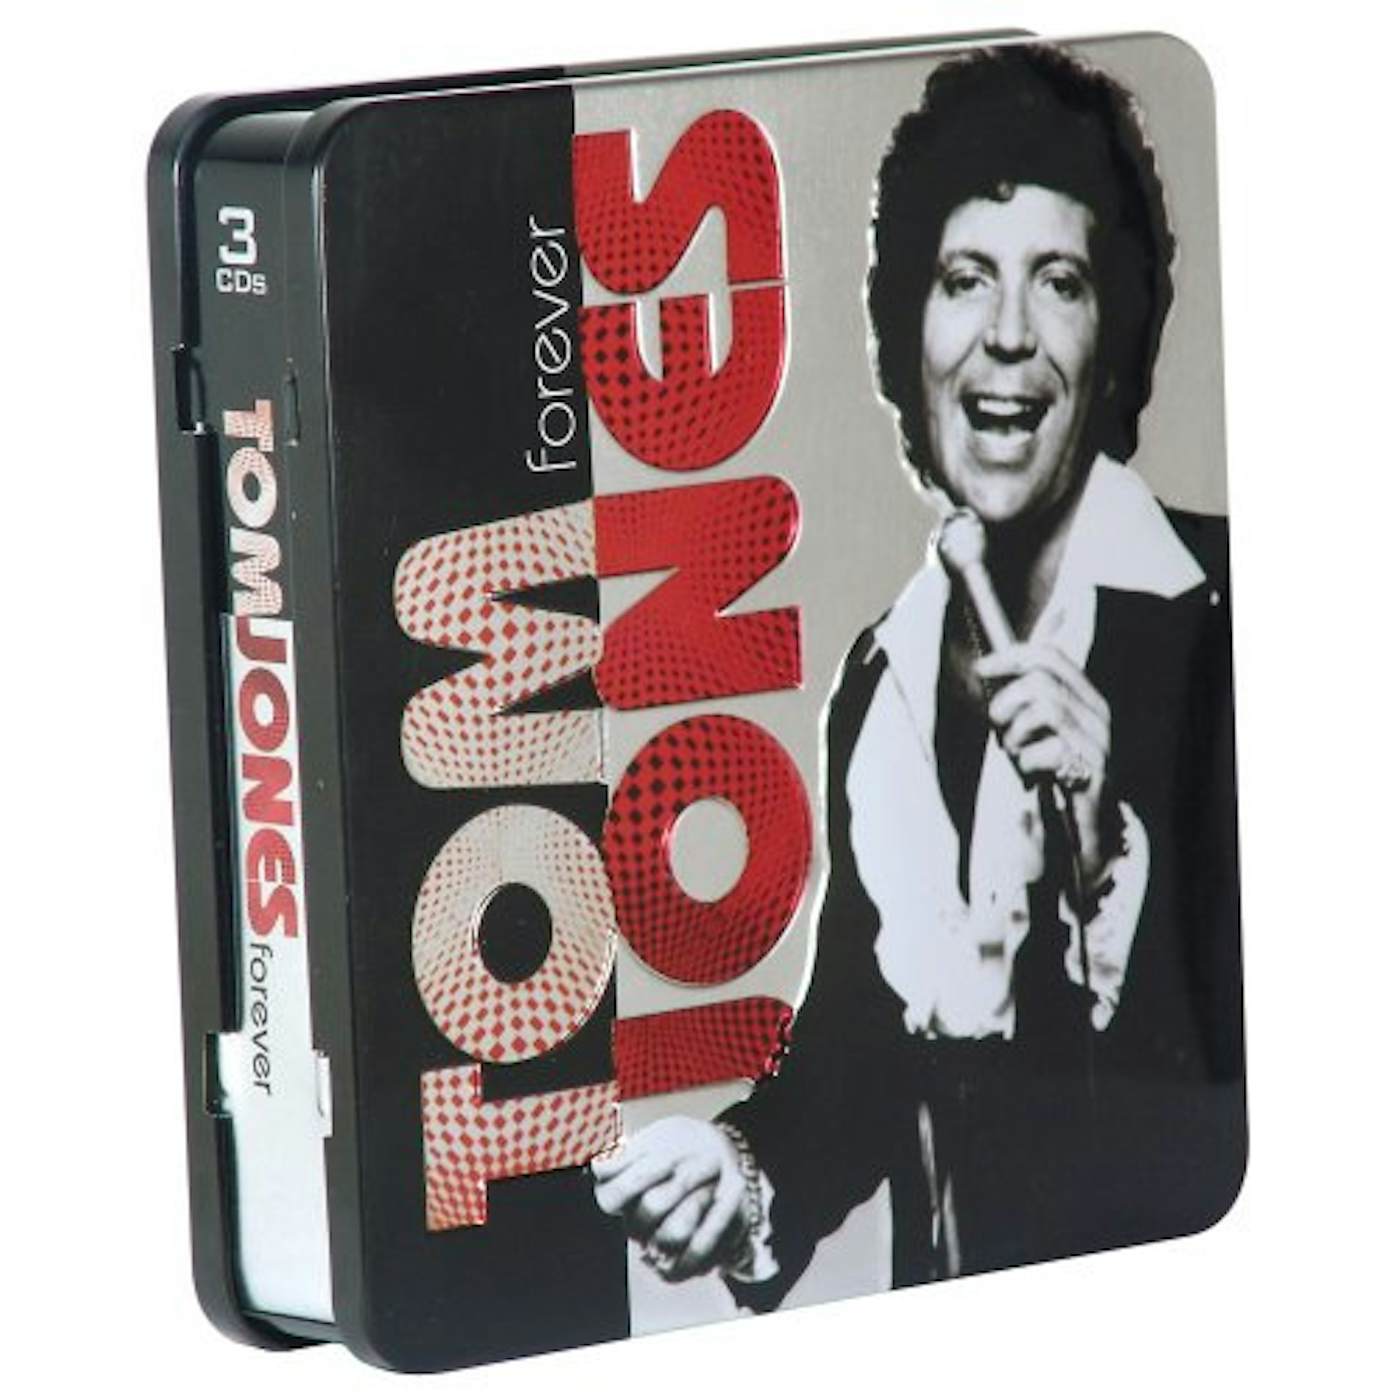 FOREVER TOM JONES CD